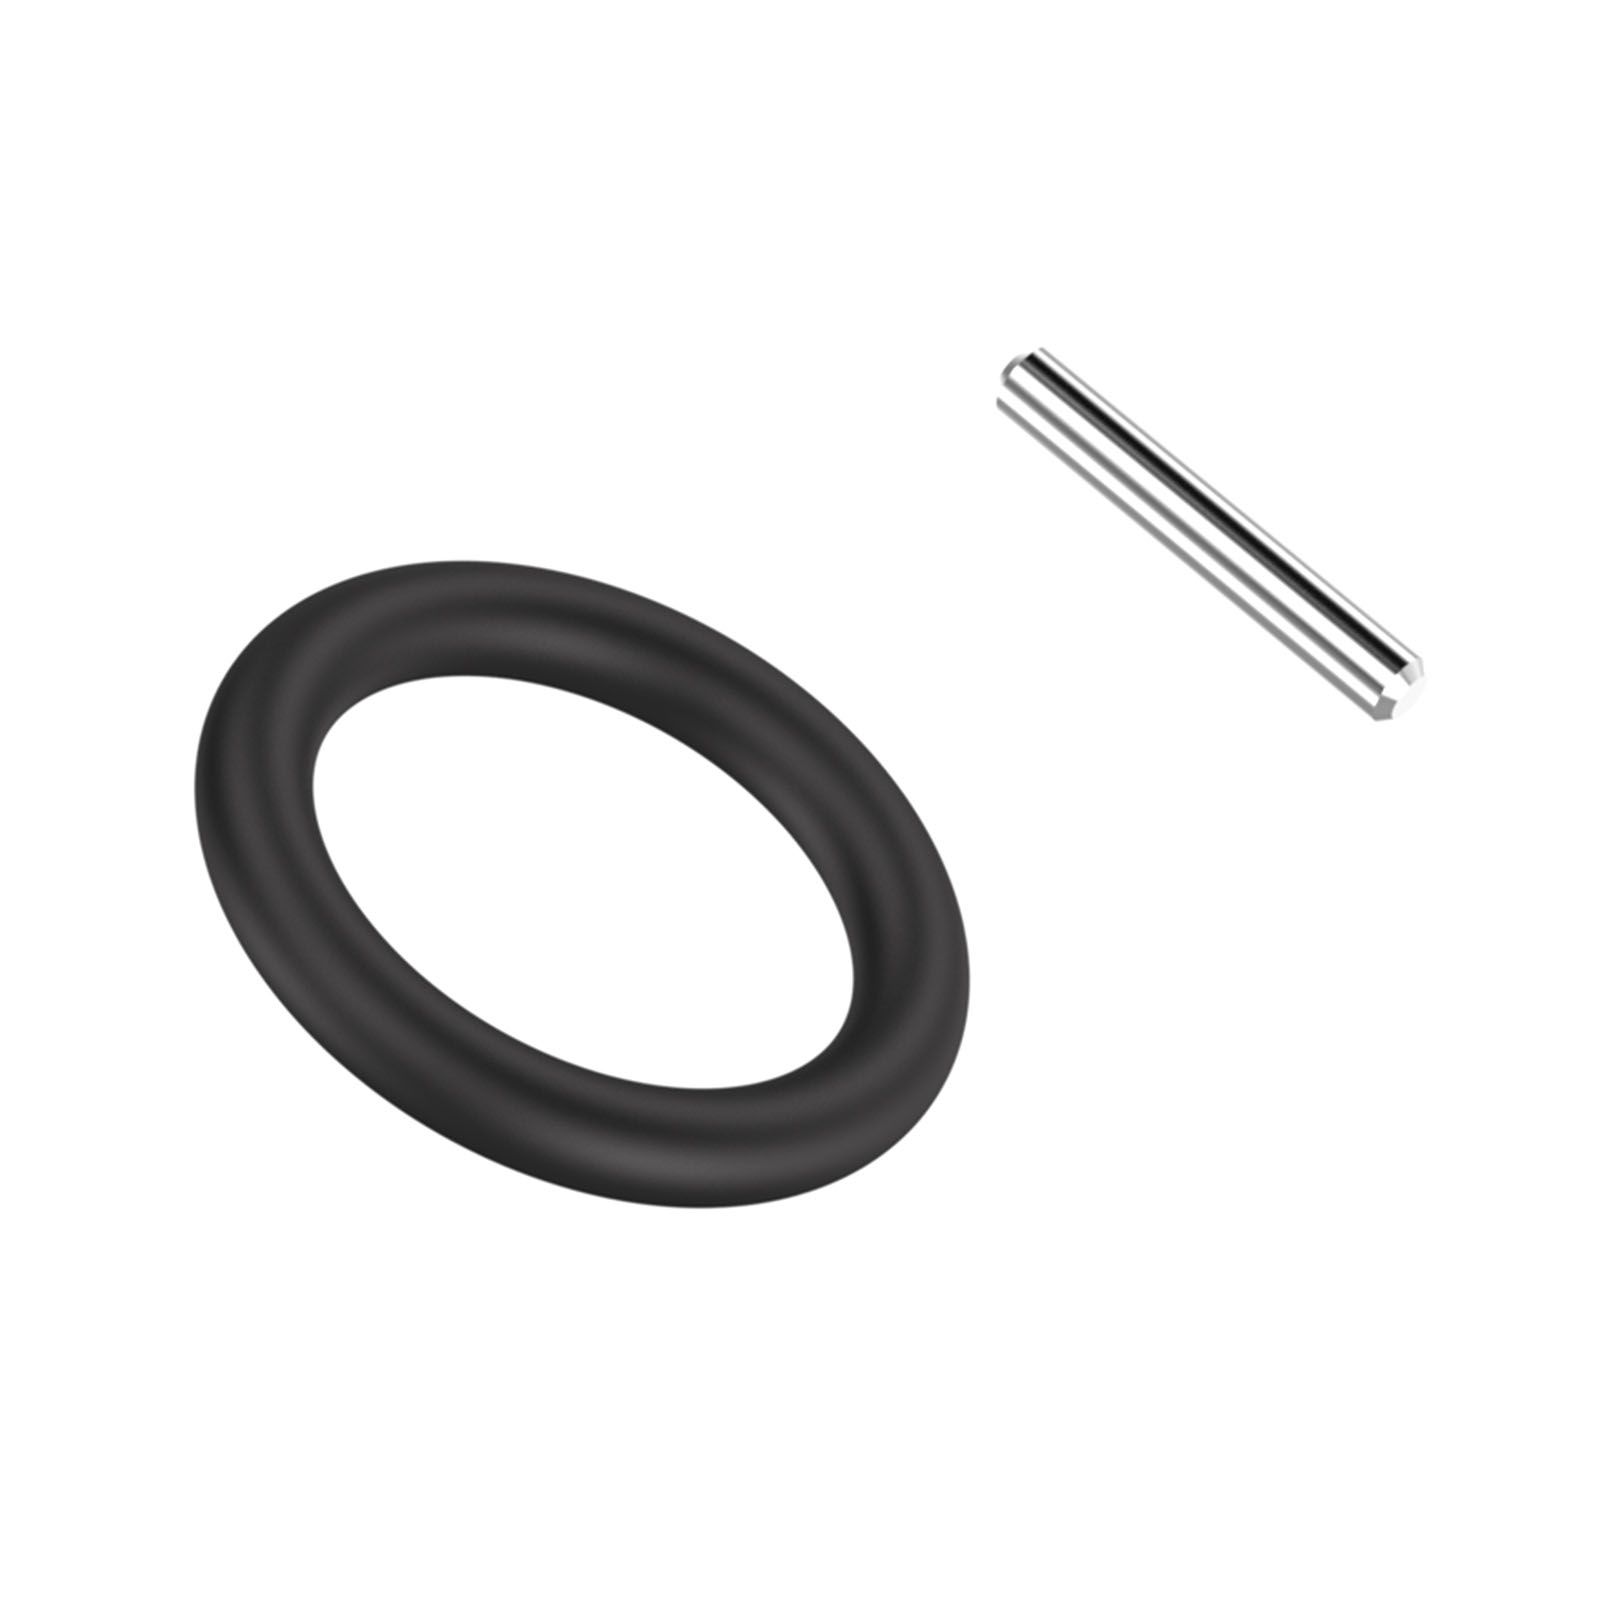 Pin and O-ring set-SQ1/2-d25 Produktfoto